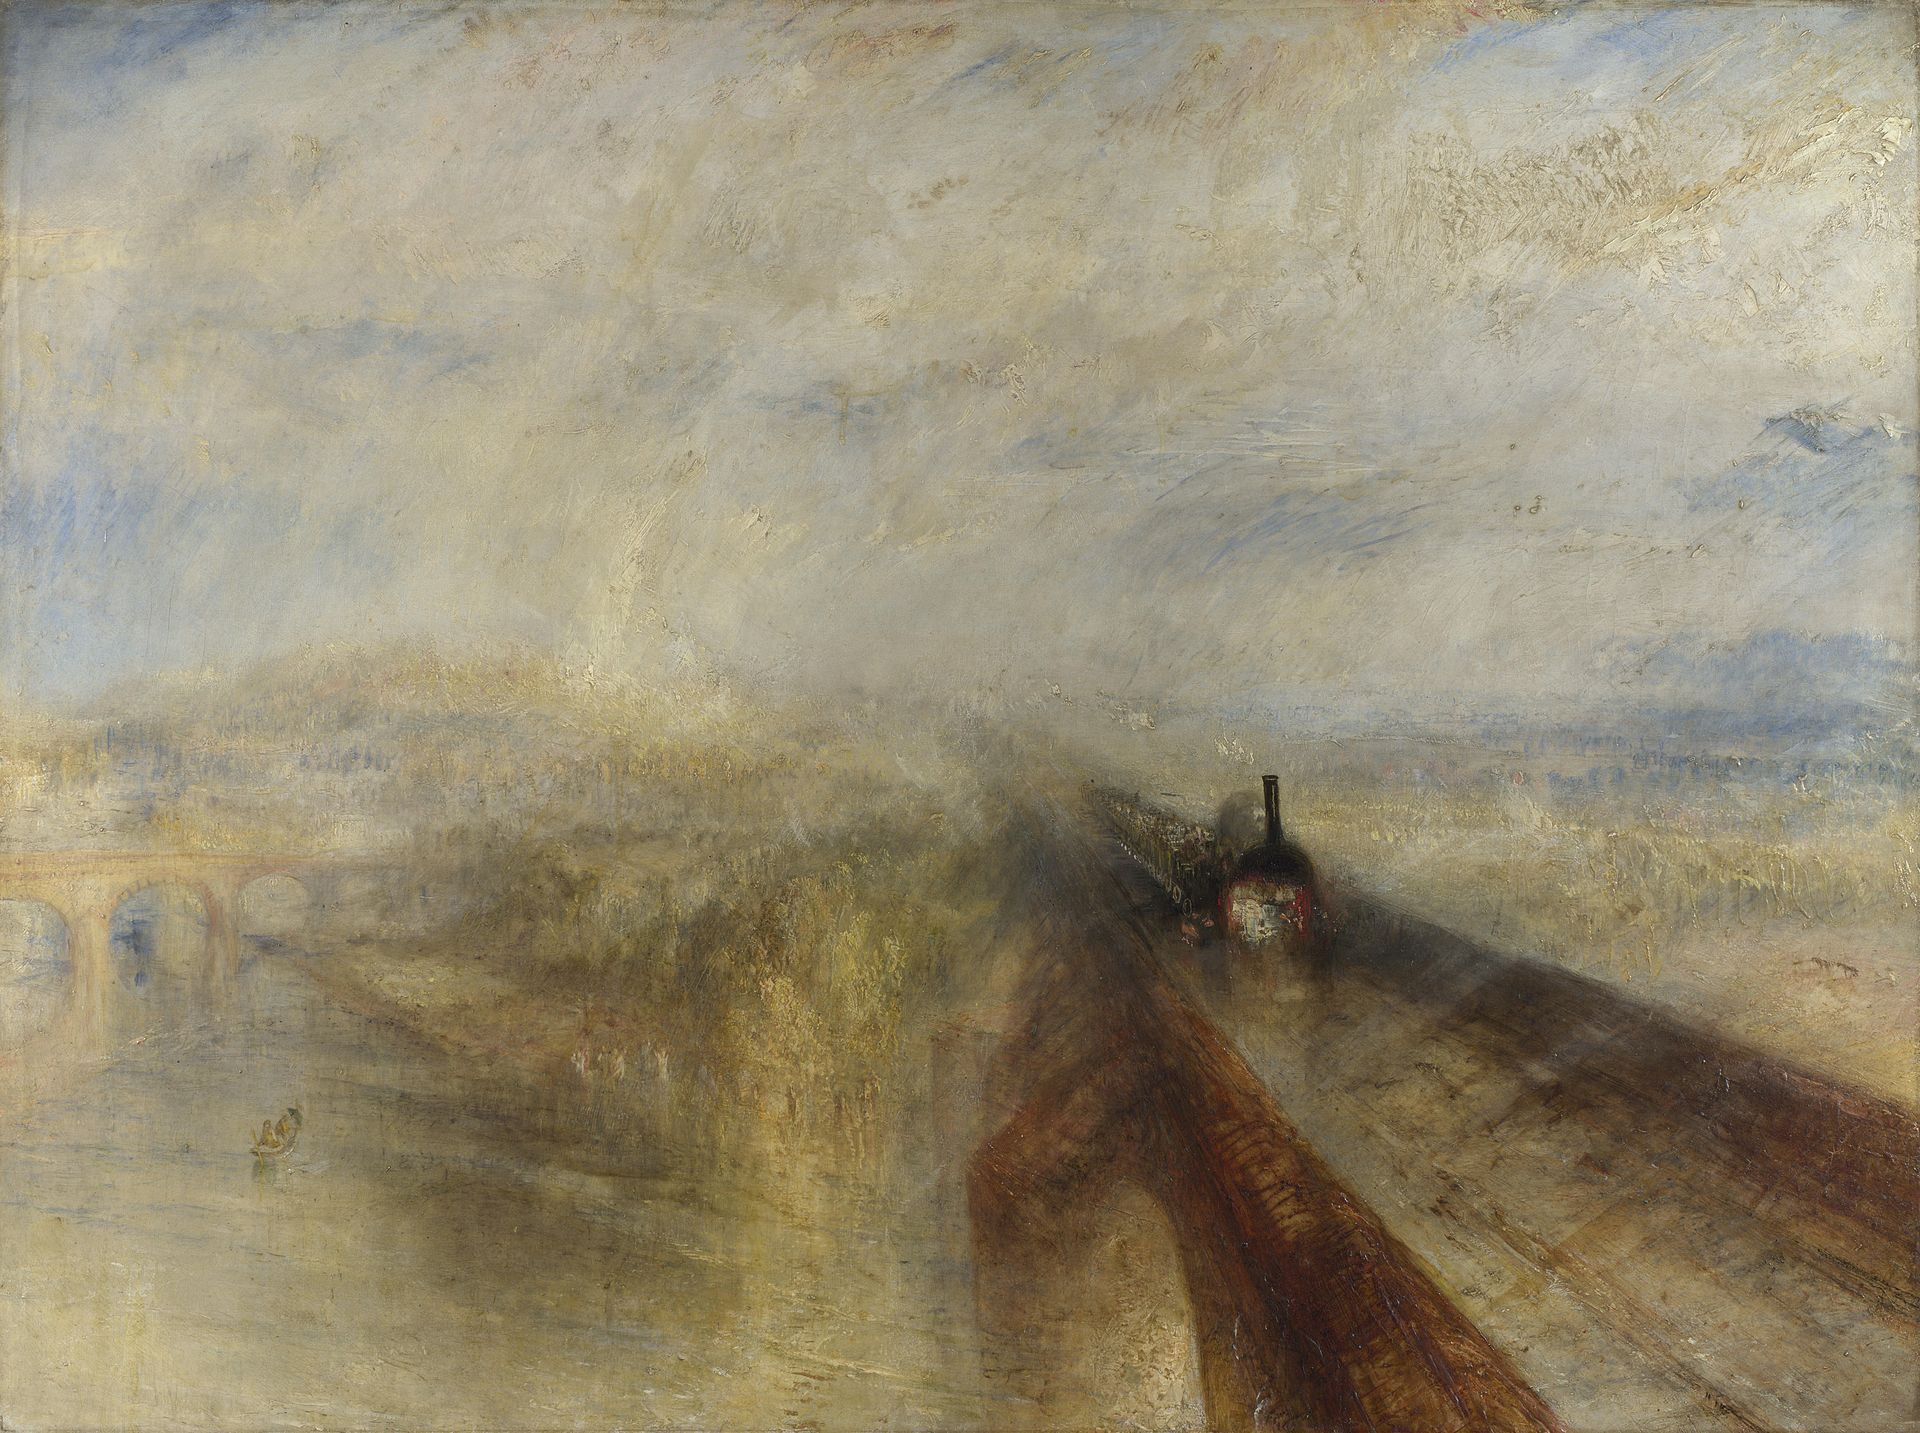 Pluie, Vapeur et Vitesse - Le Grand Chemin de fer de l'Ouest  by Joseph Mallord William Turner - 1844 - 91 x 121.8 cm 